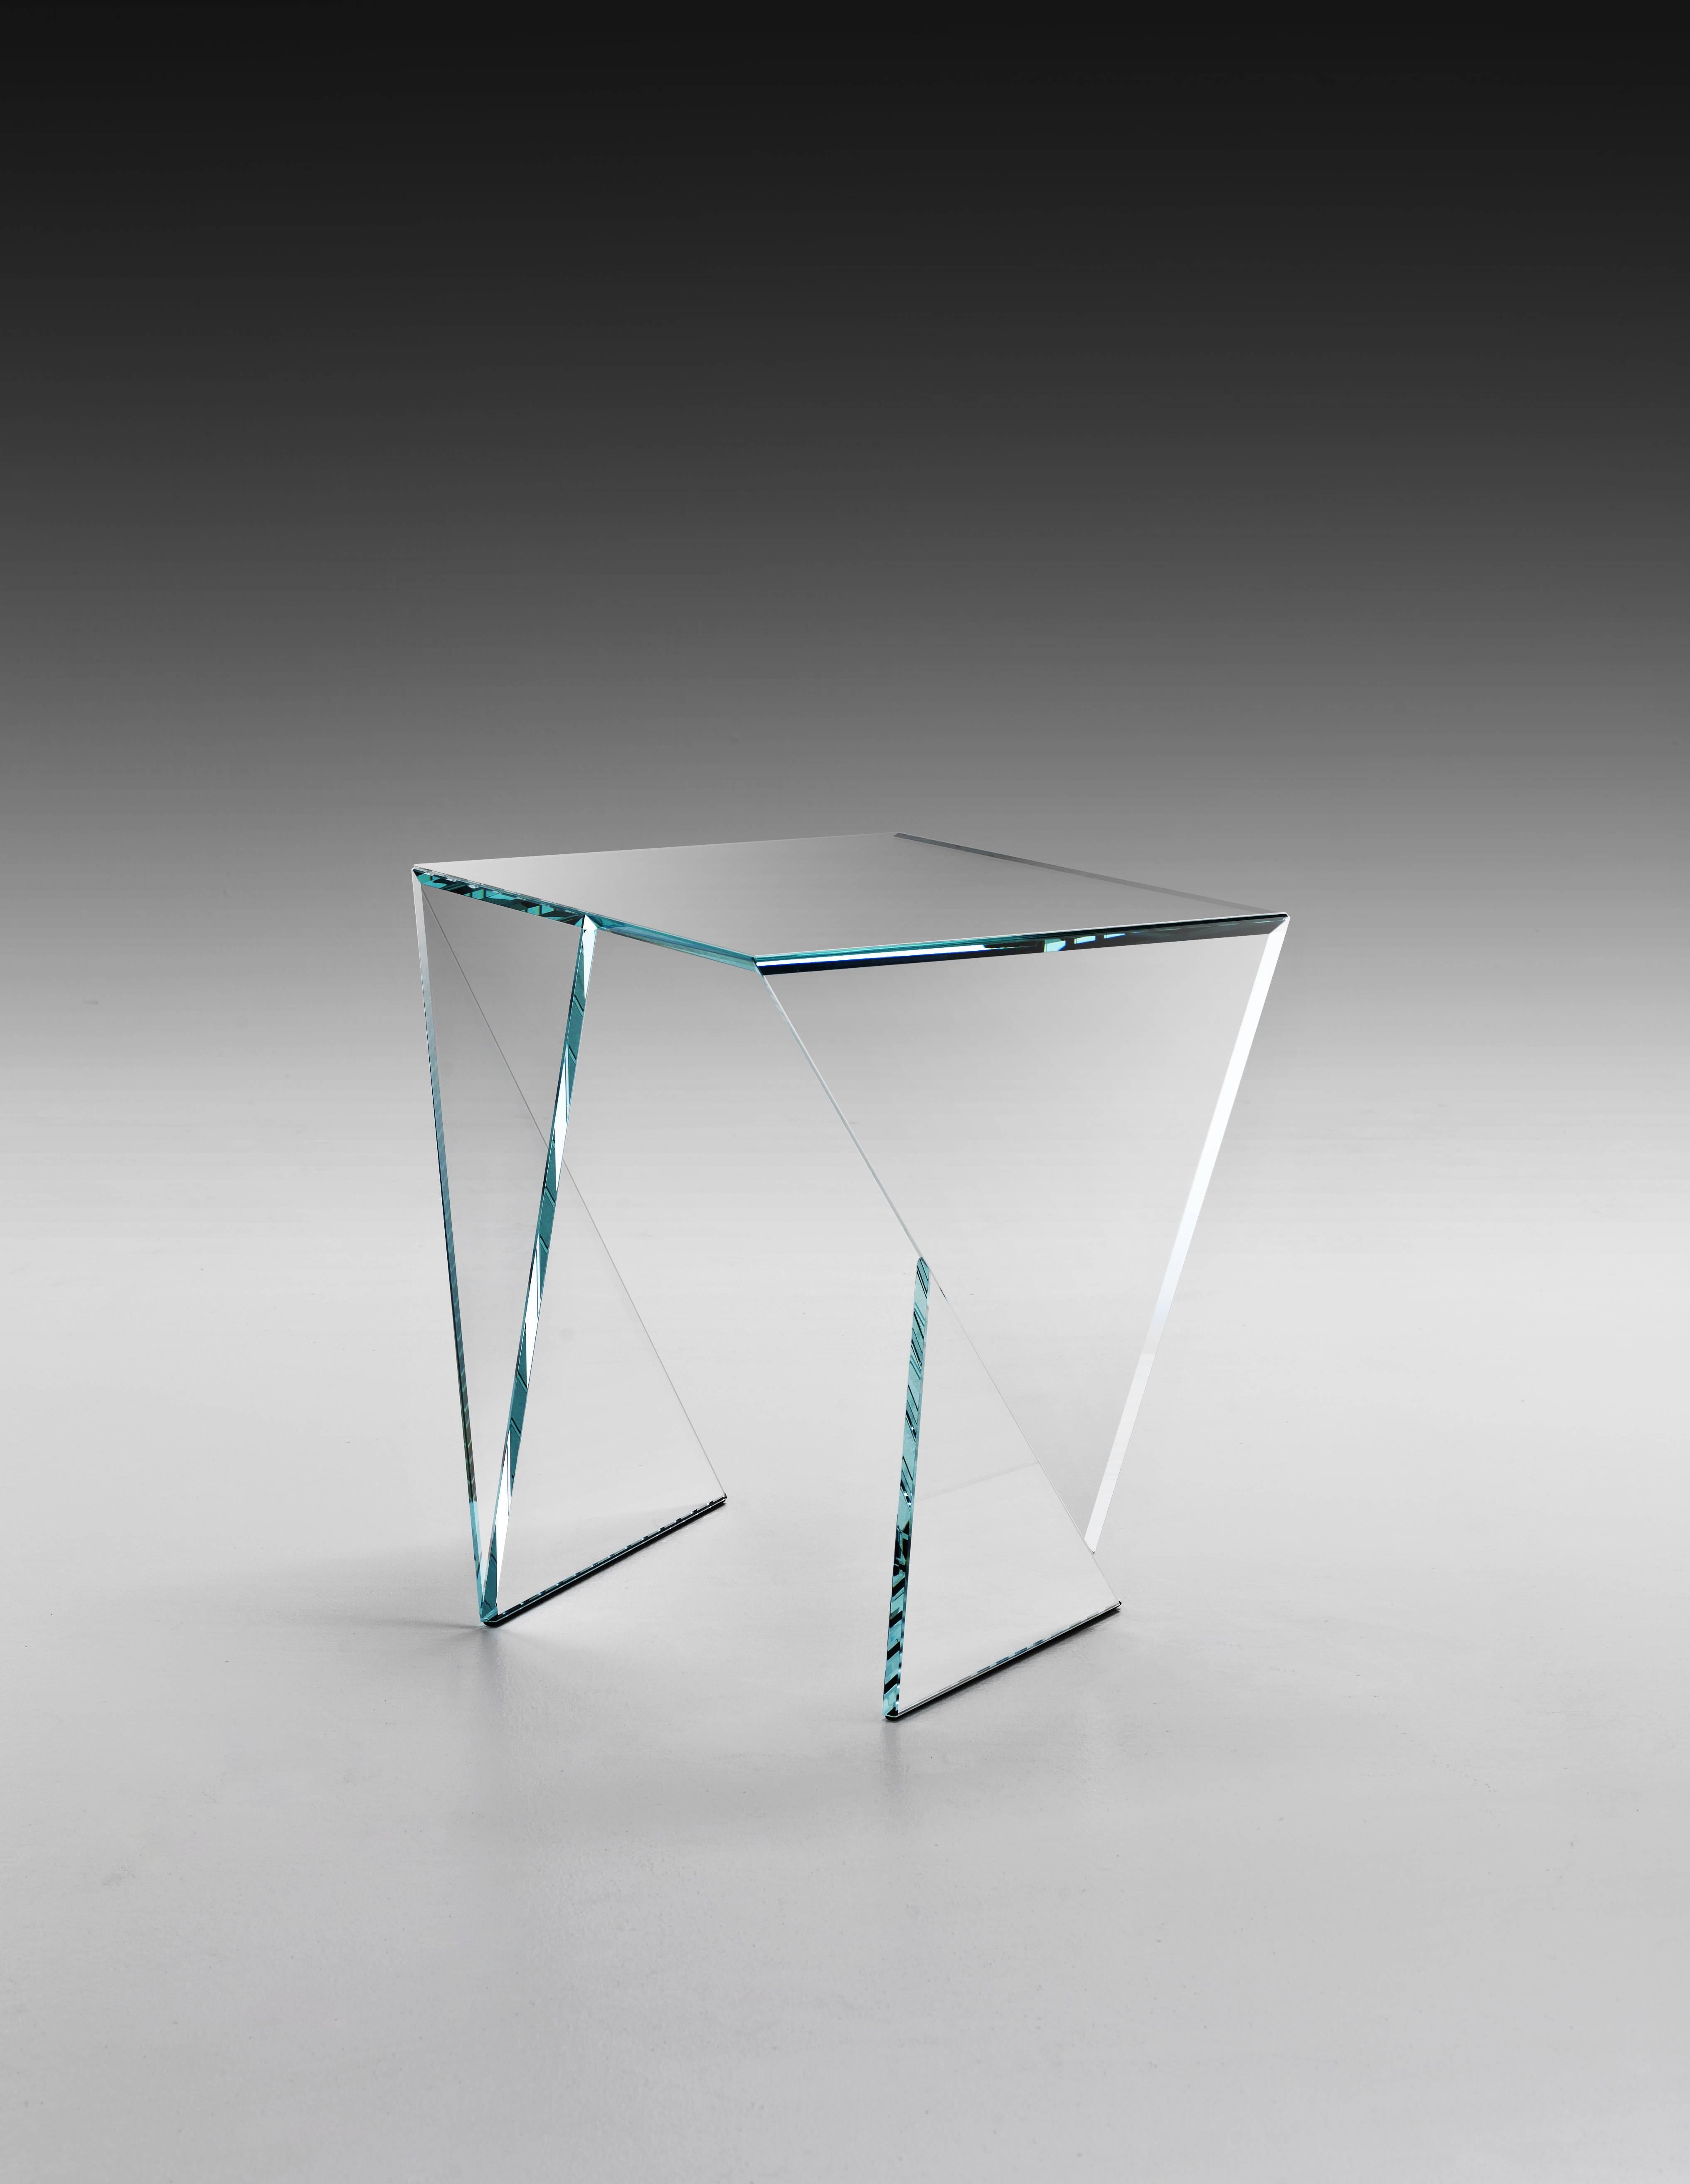 Der Beistelltisch 'Origami Calcio' ist aus extraklarem Kristallglas gefertigt. Jede Scheibe aus extraklarem Kristallglas wird mit äußerster Präzision geschnitten und geschliffen, dann werden die Scheiben von Hand zusammengesetzt, wobei sie perfekt